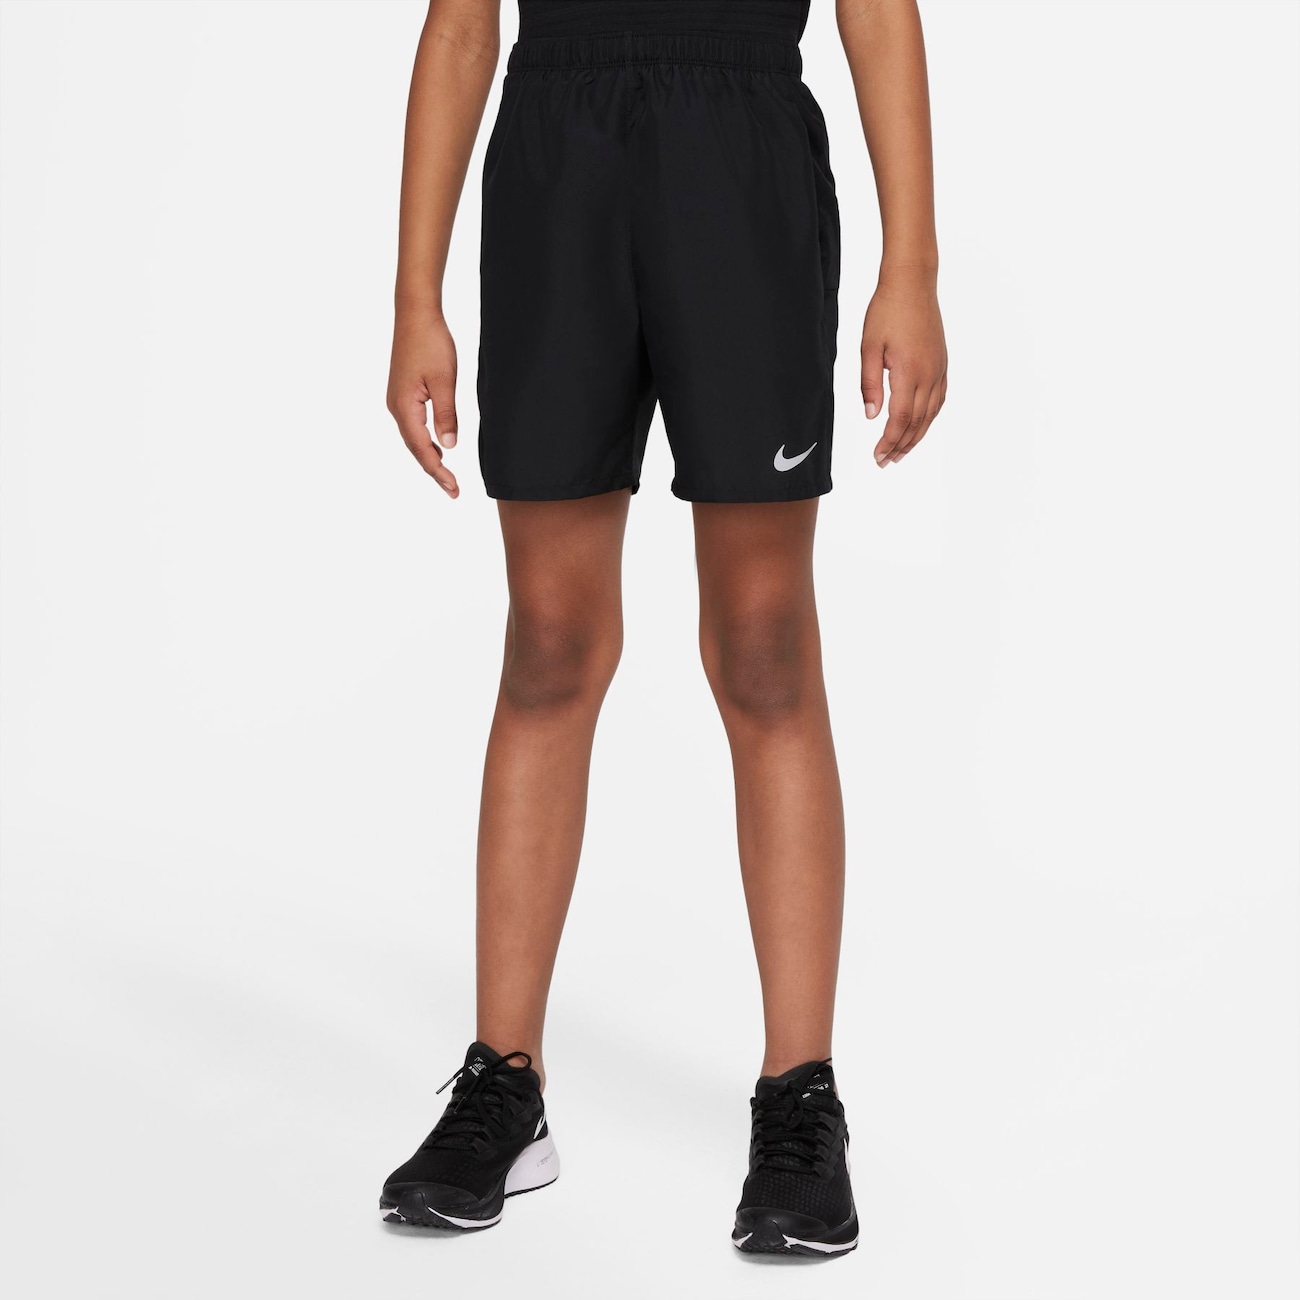 Shorts Nike Challenger Infantil